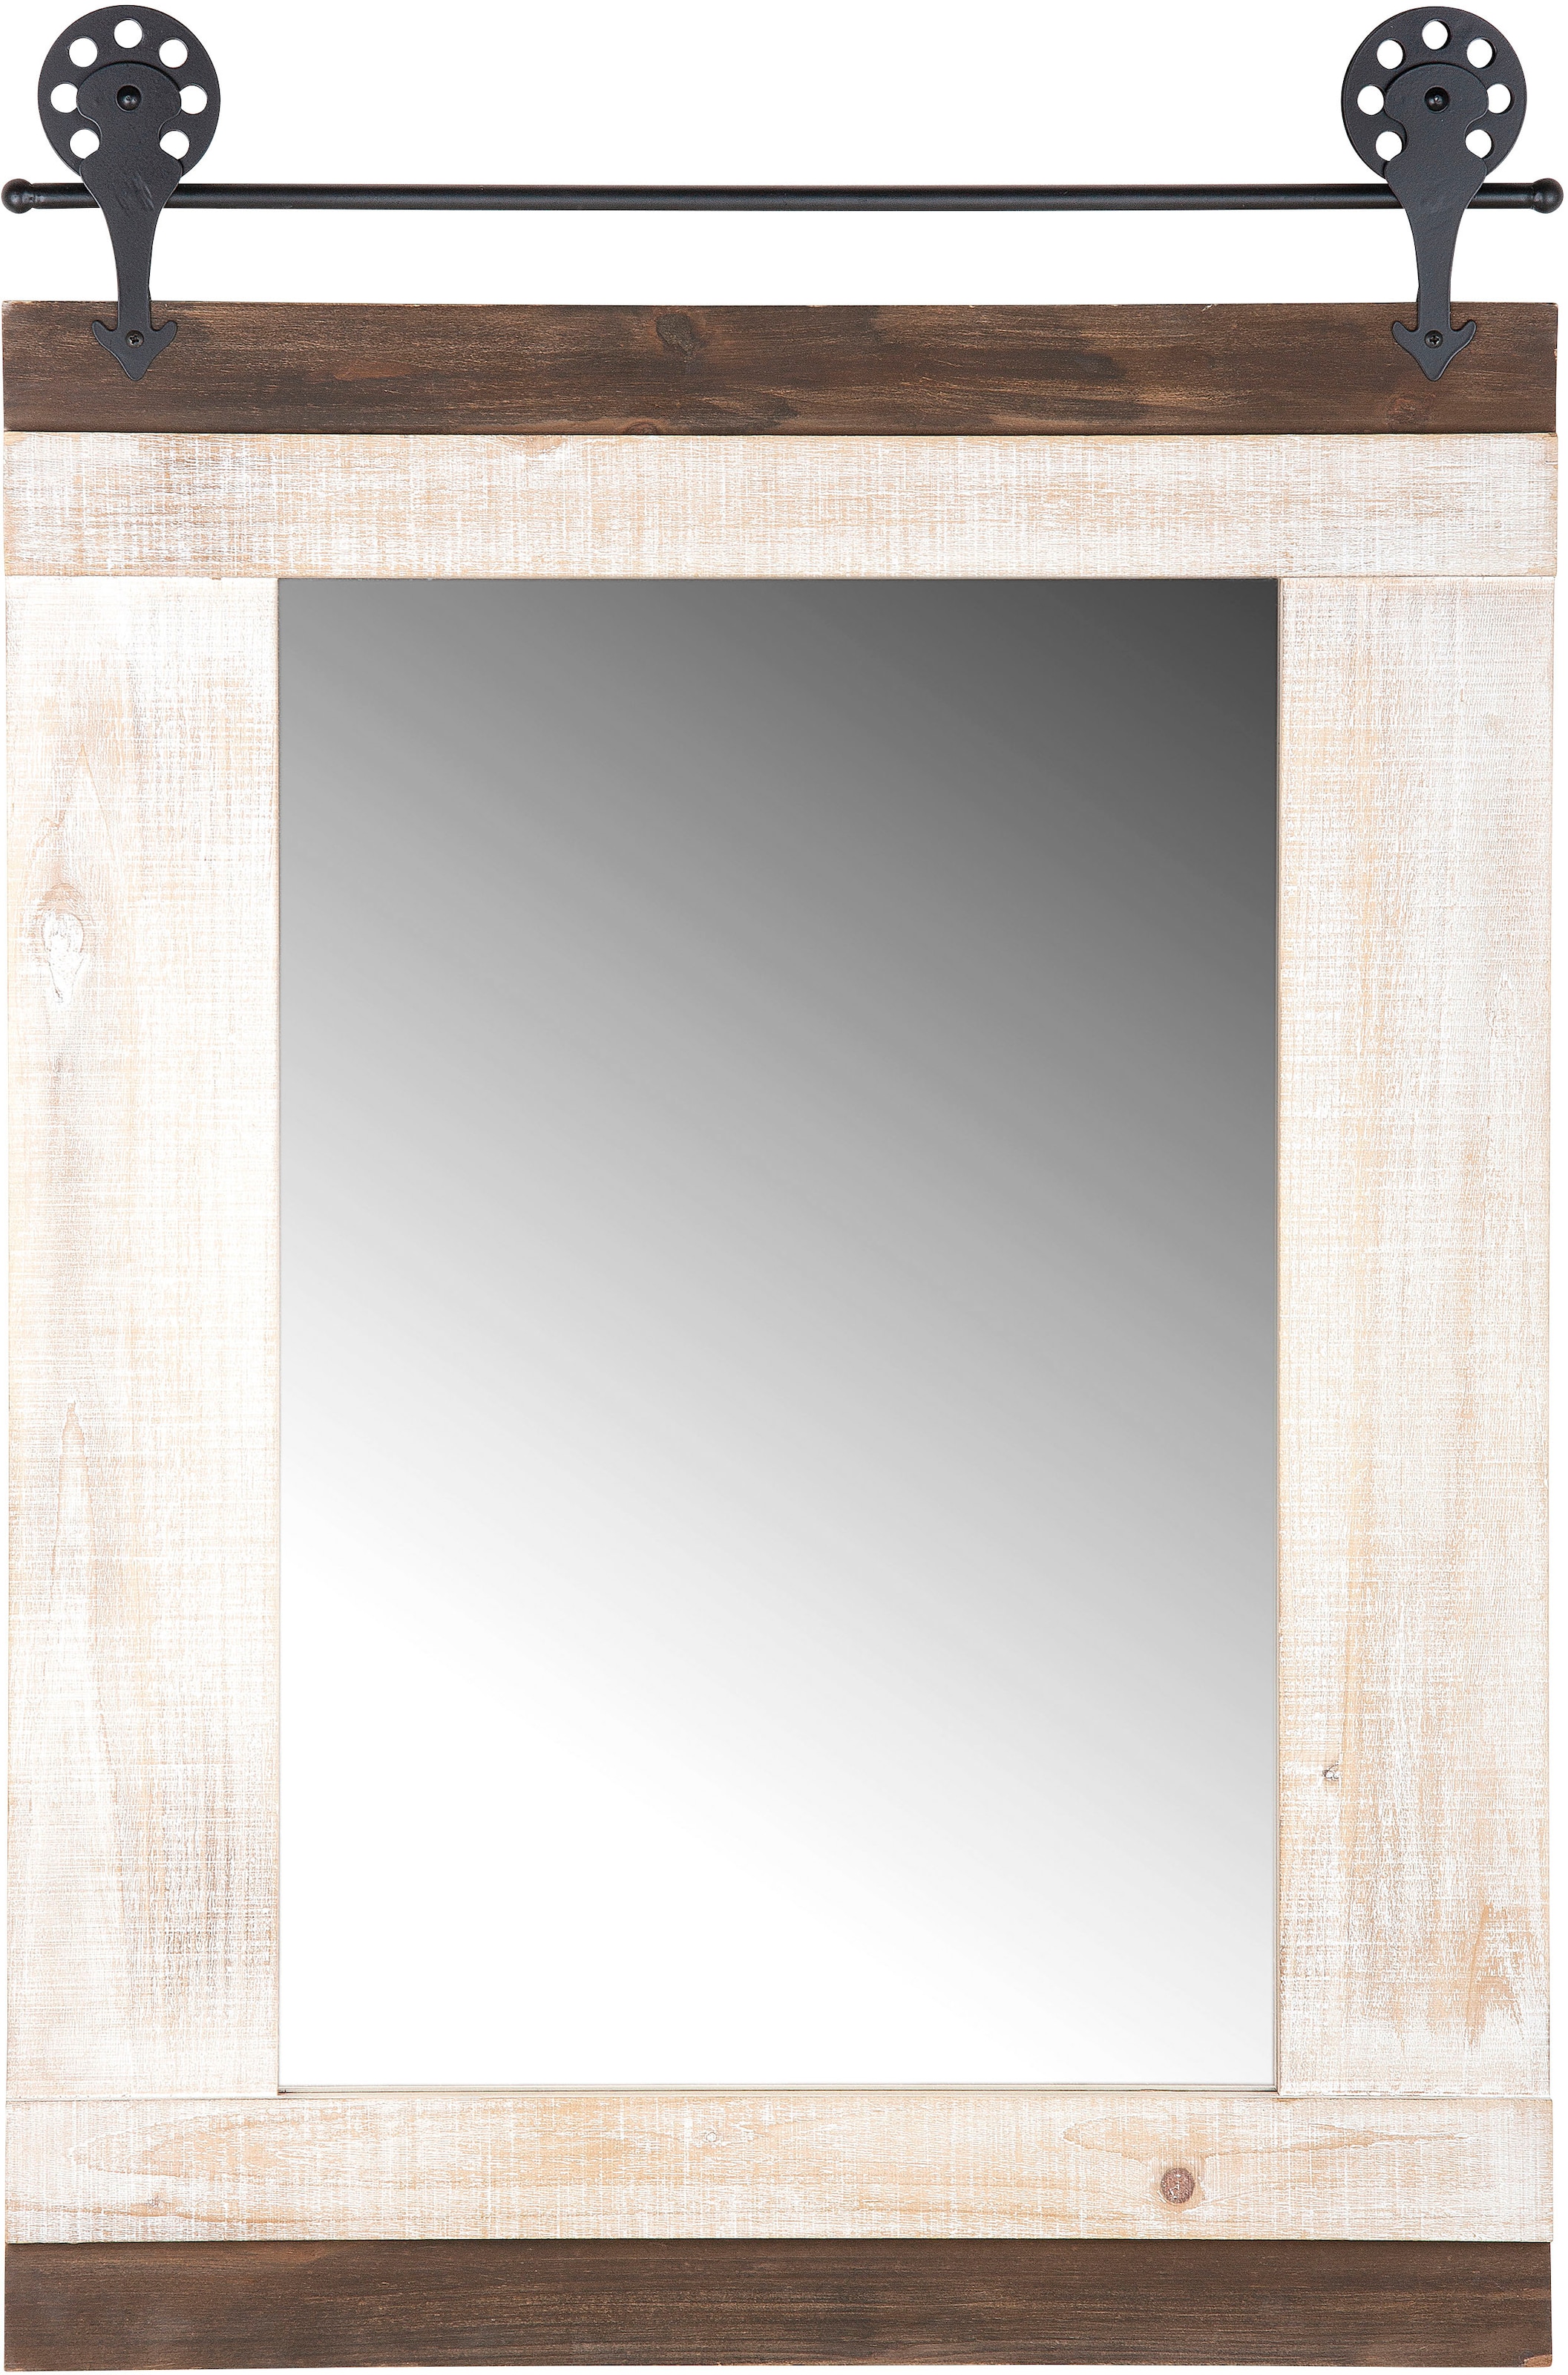 Artland Wandspiegel »Rahmenlos«, - rahmenloser Spiegel/Mirror zum Aufhängen  geeignet als Ganzkörperspiegel, Badspiegel/Badezimmerspiegel,  Schminkspiegel, Flurspiegel, kleiner Spiegel für Gäste-WC oder  Wohnzimmerspiegel, inkl. Aufhänger für die Wand